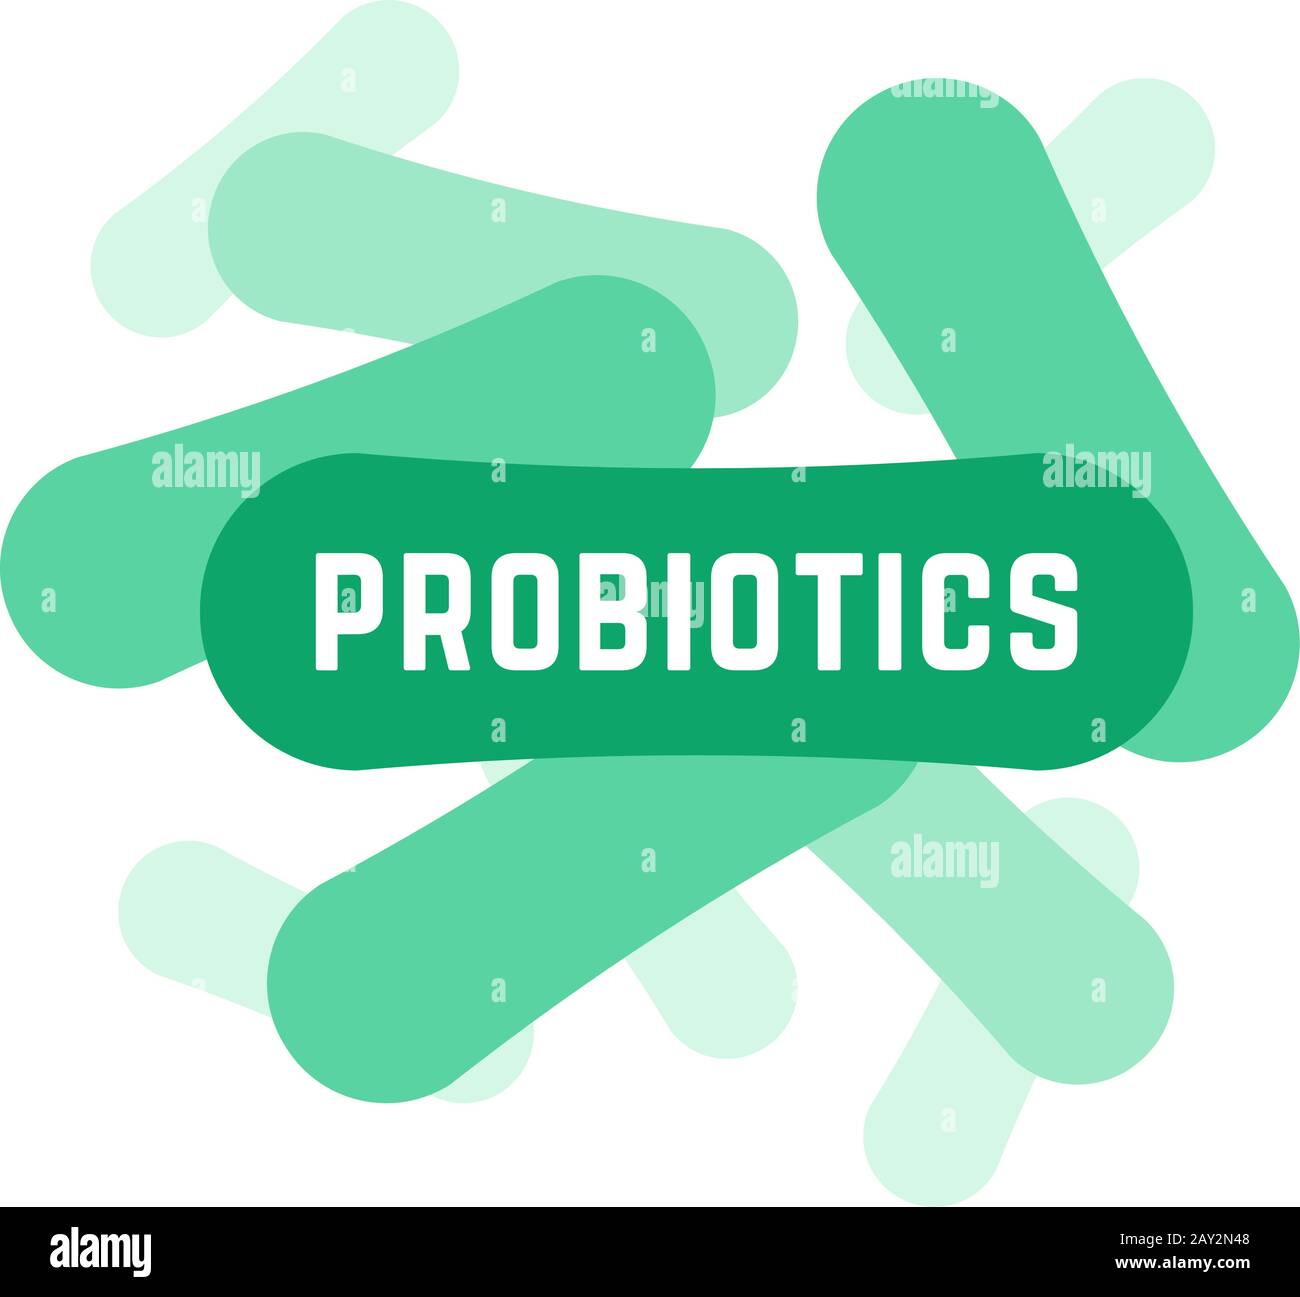 Grünes Logo für probiotische Bakterien Stock Vektor